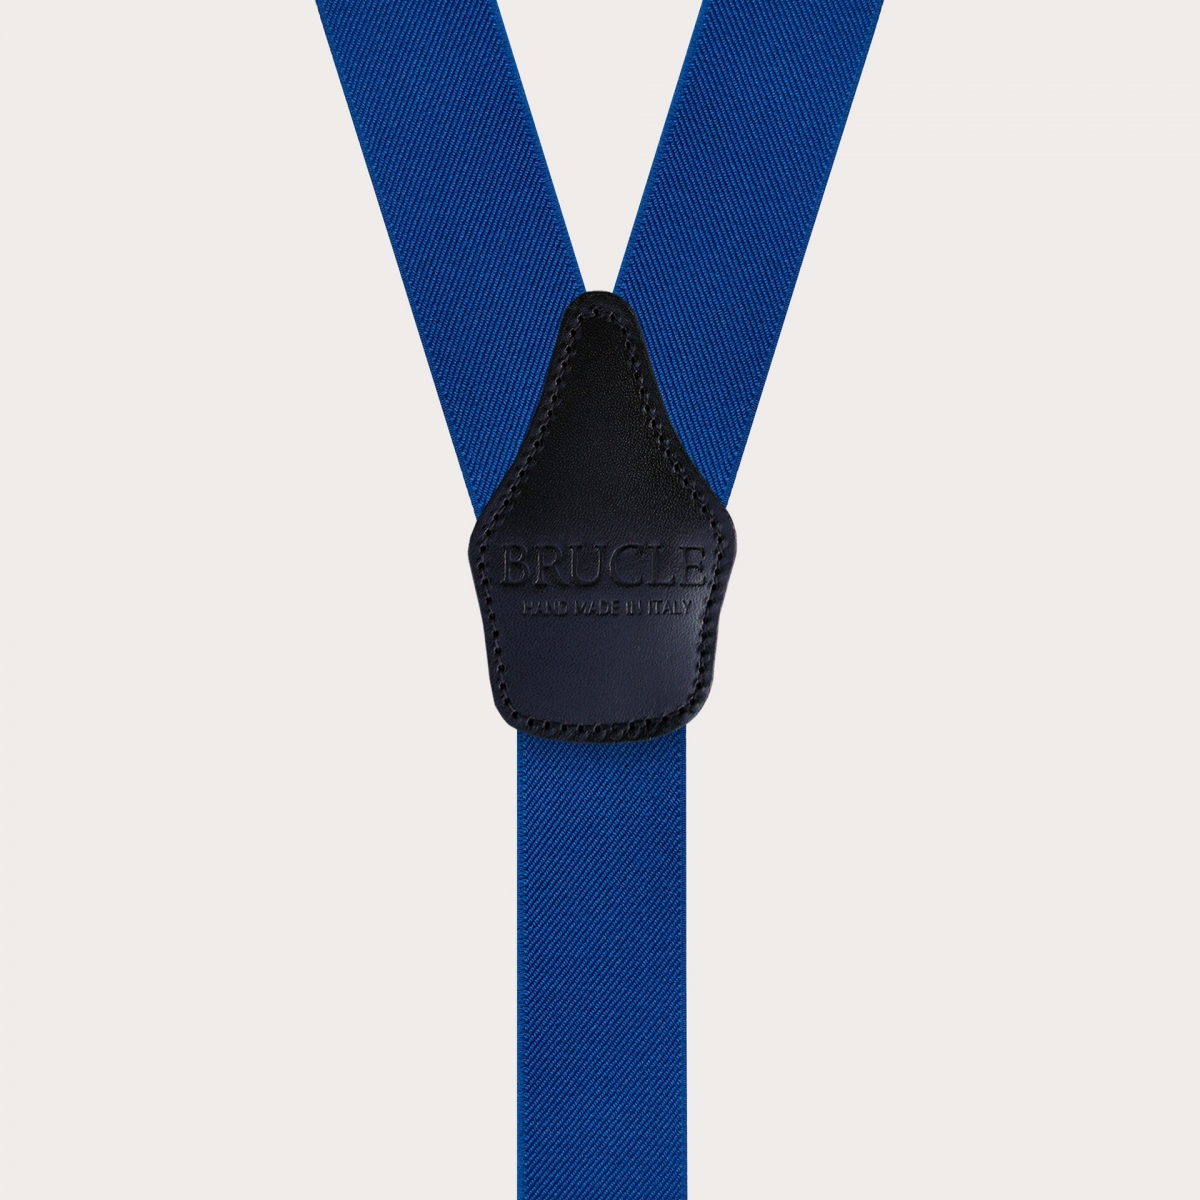 Y-shaped elastic royal blue suspenders